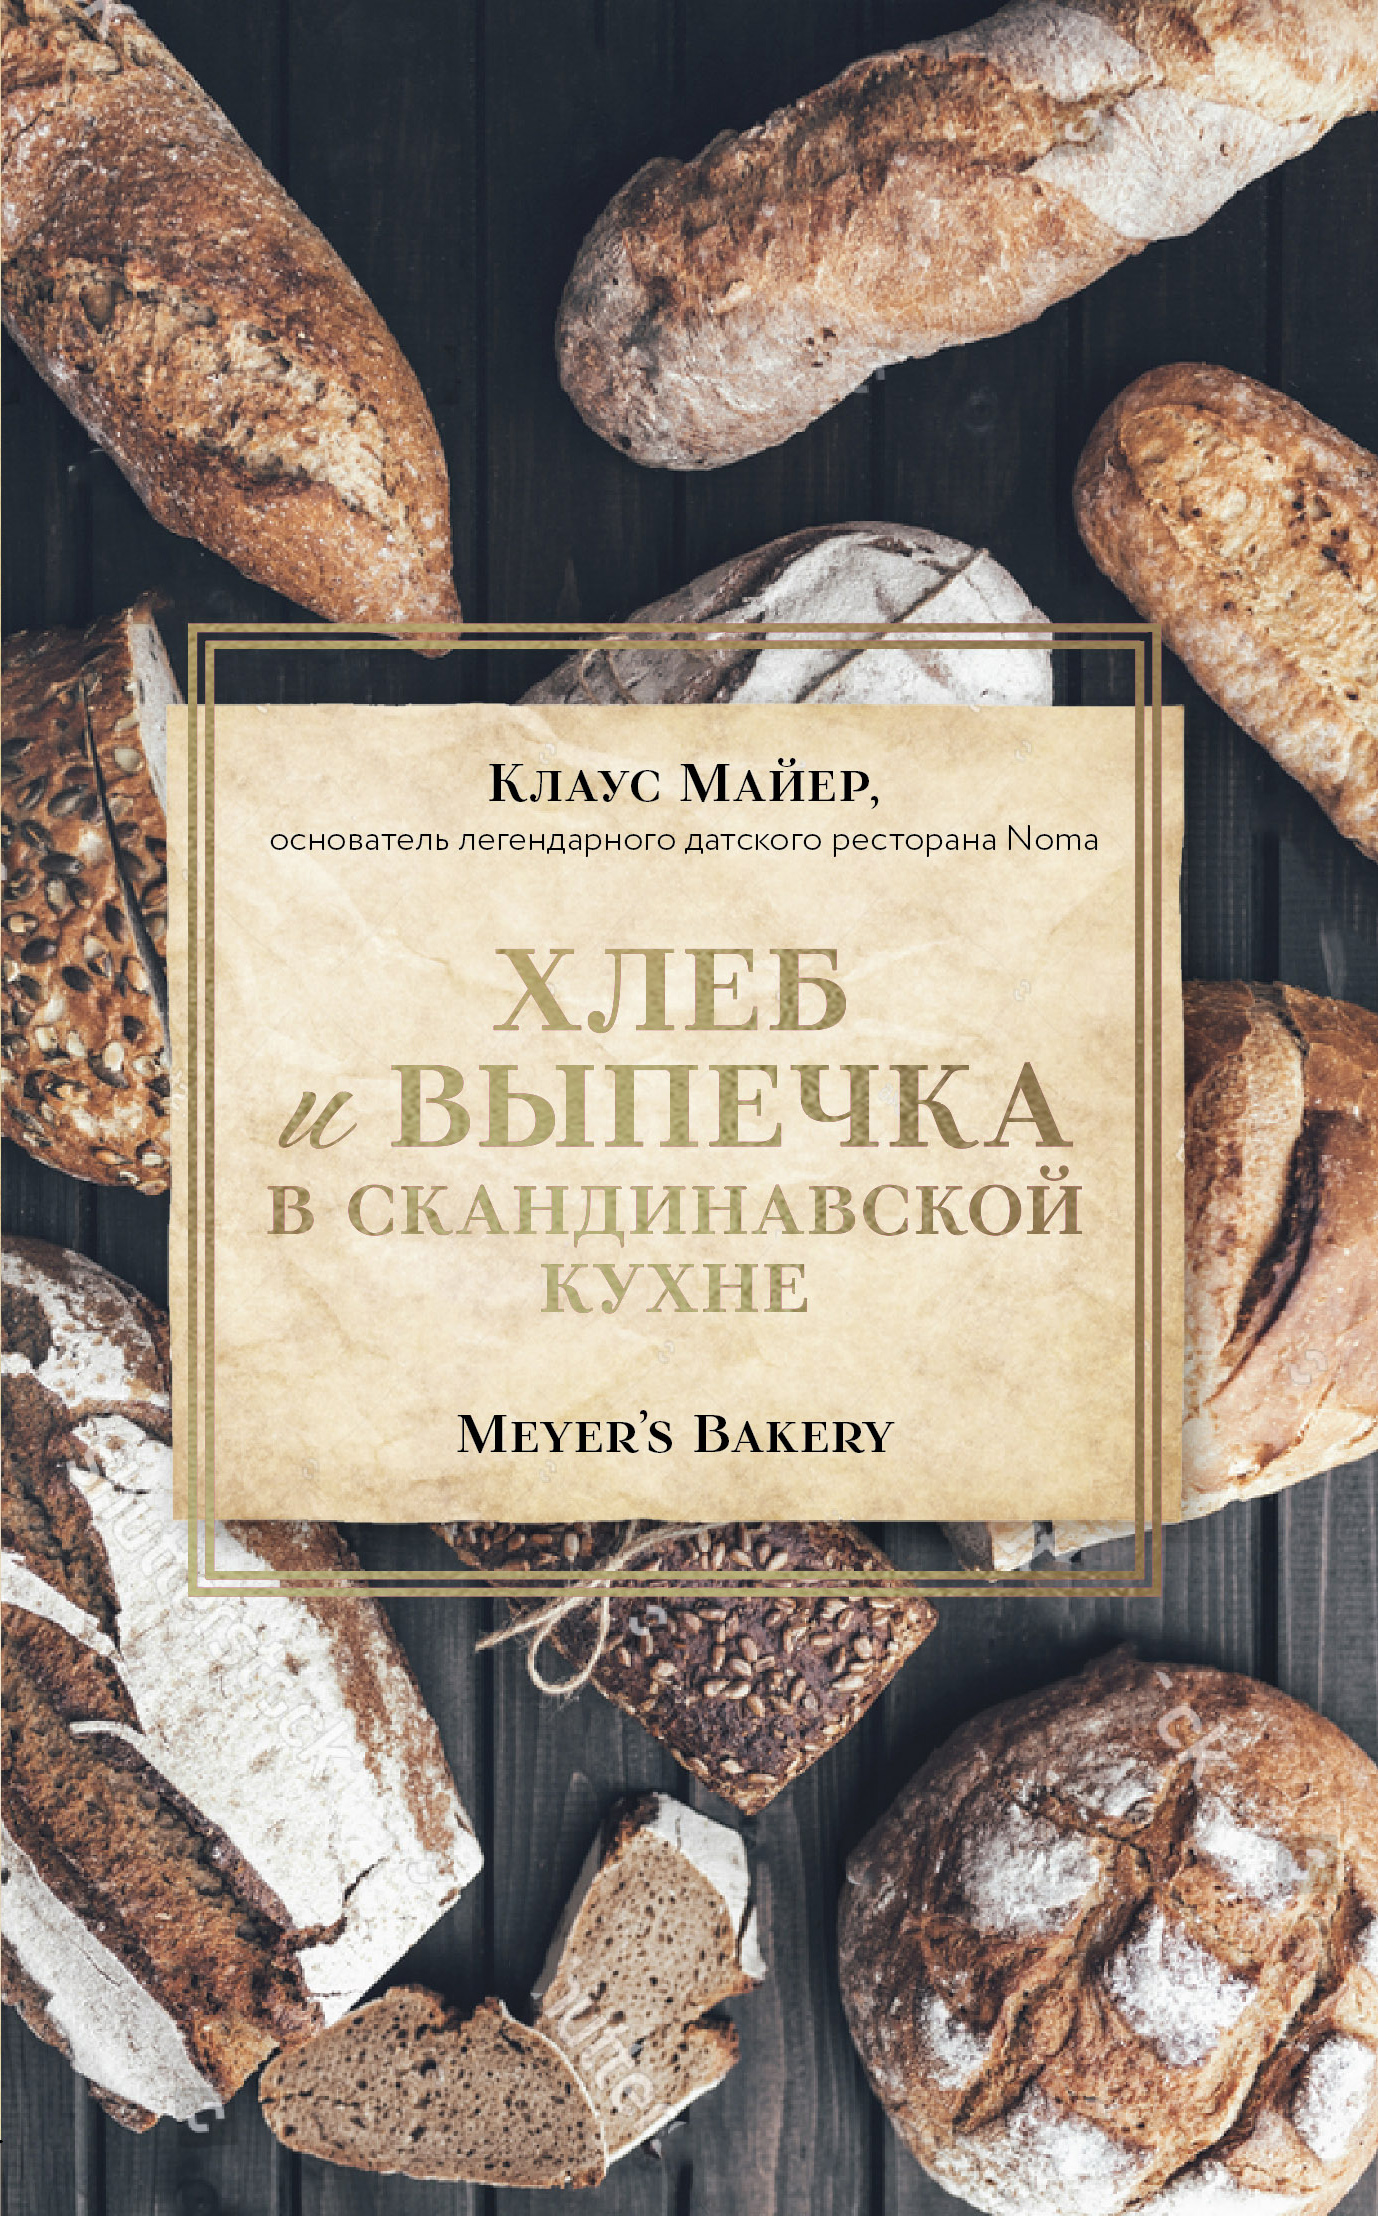      . Meyers Bakery